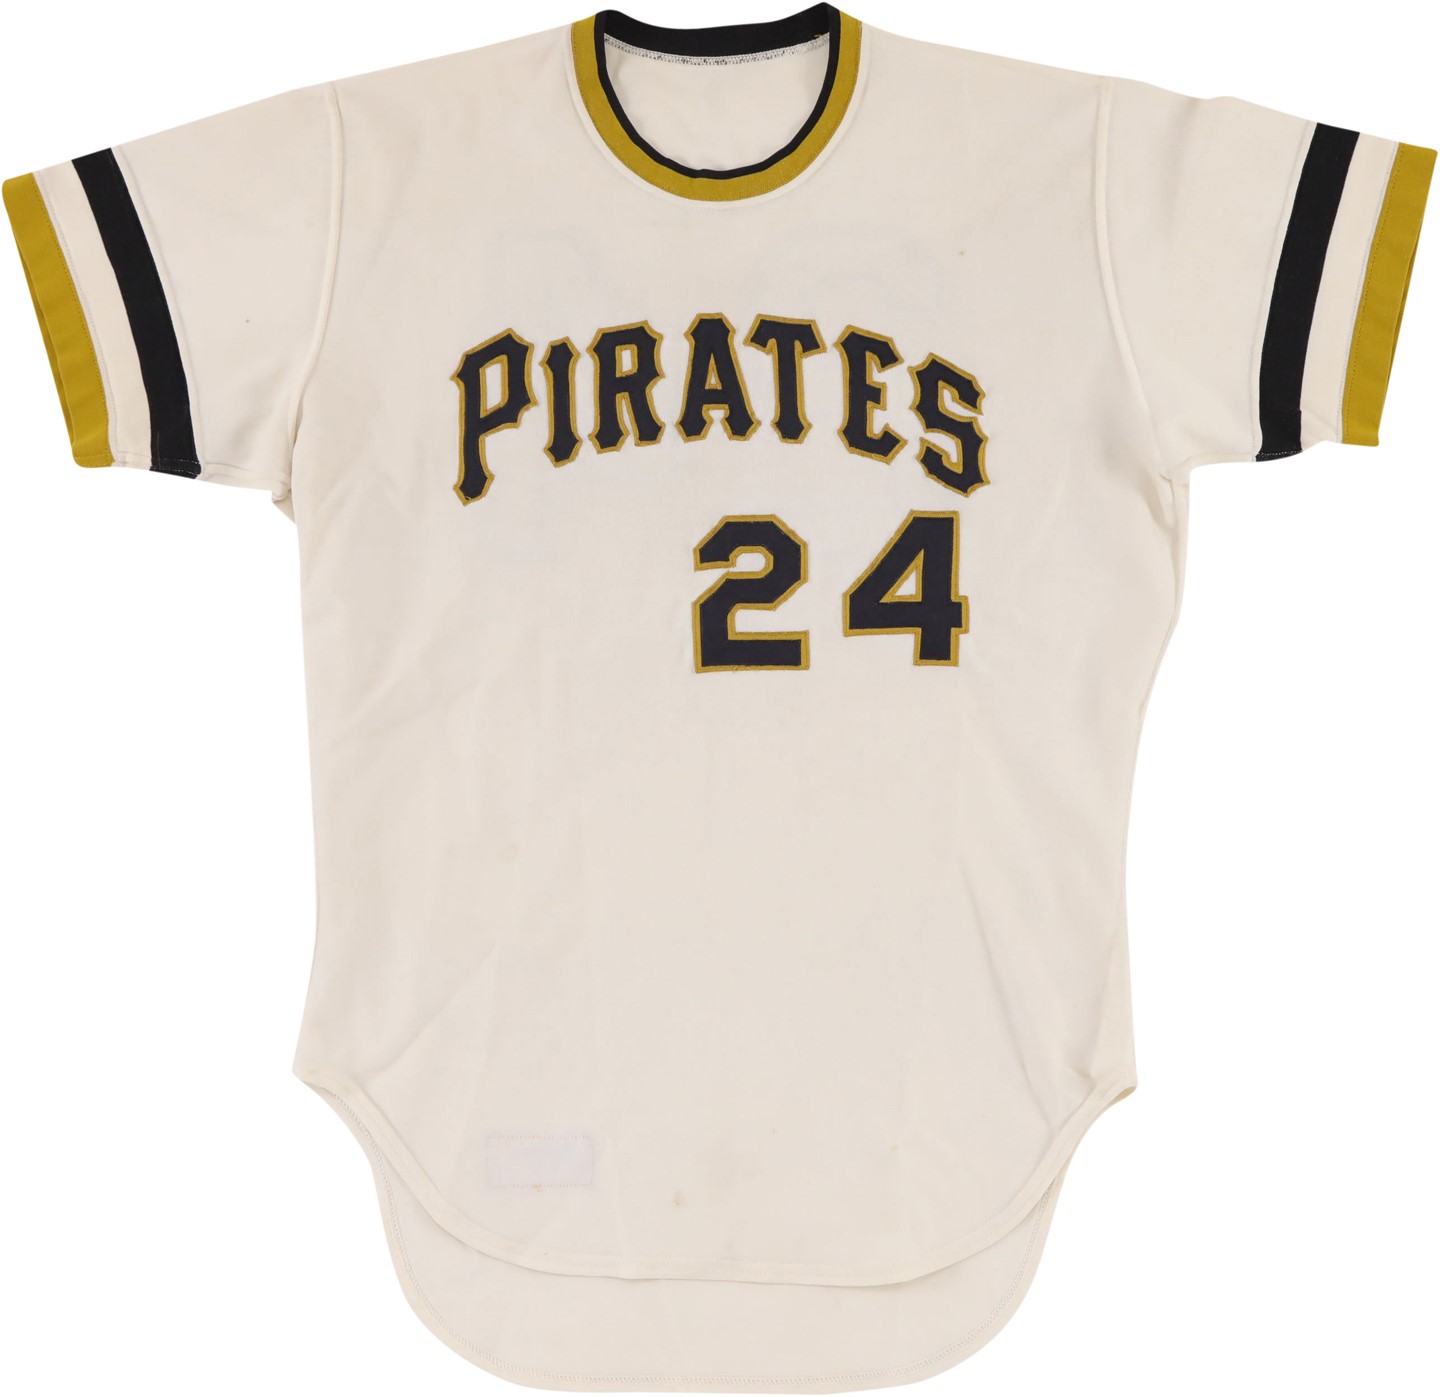 - Circa 1974 Pittsburgh Pirates Game Worn Jersey